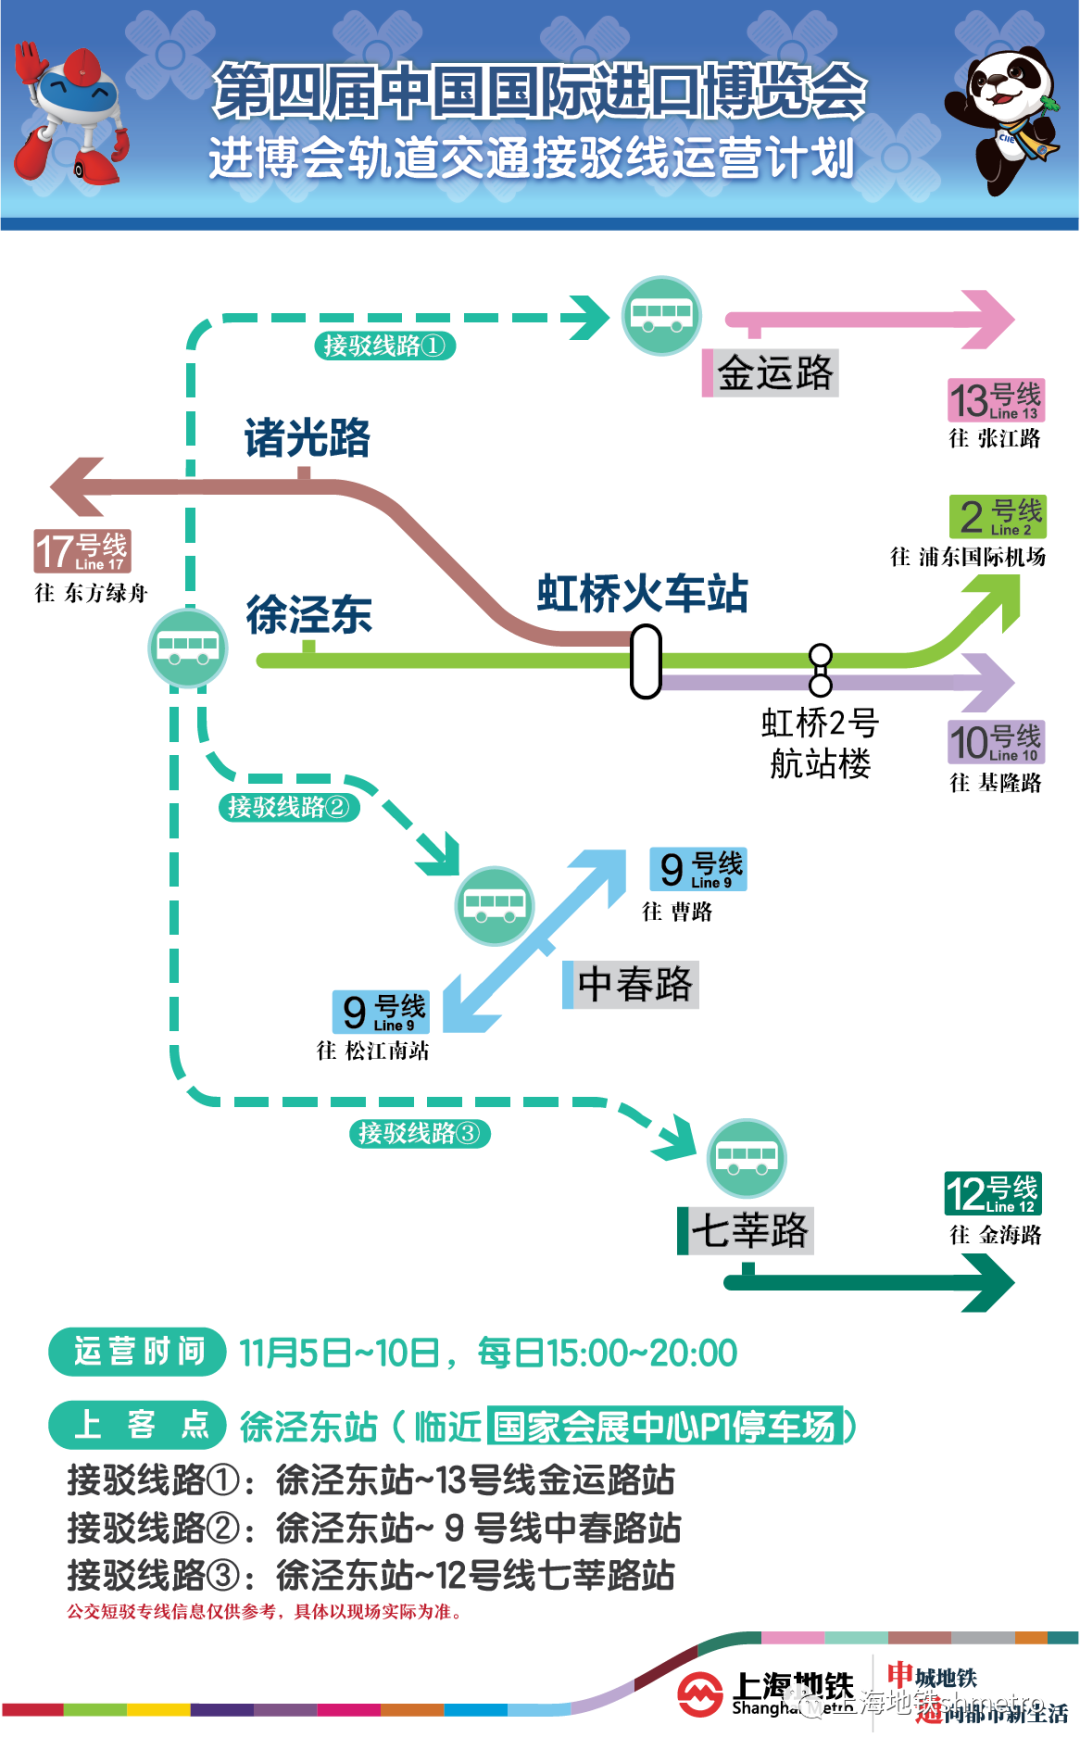 进博的热度上海的温度｜上海地铁这三条线将实施最高运力配置